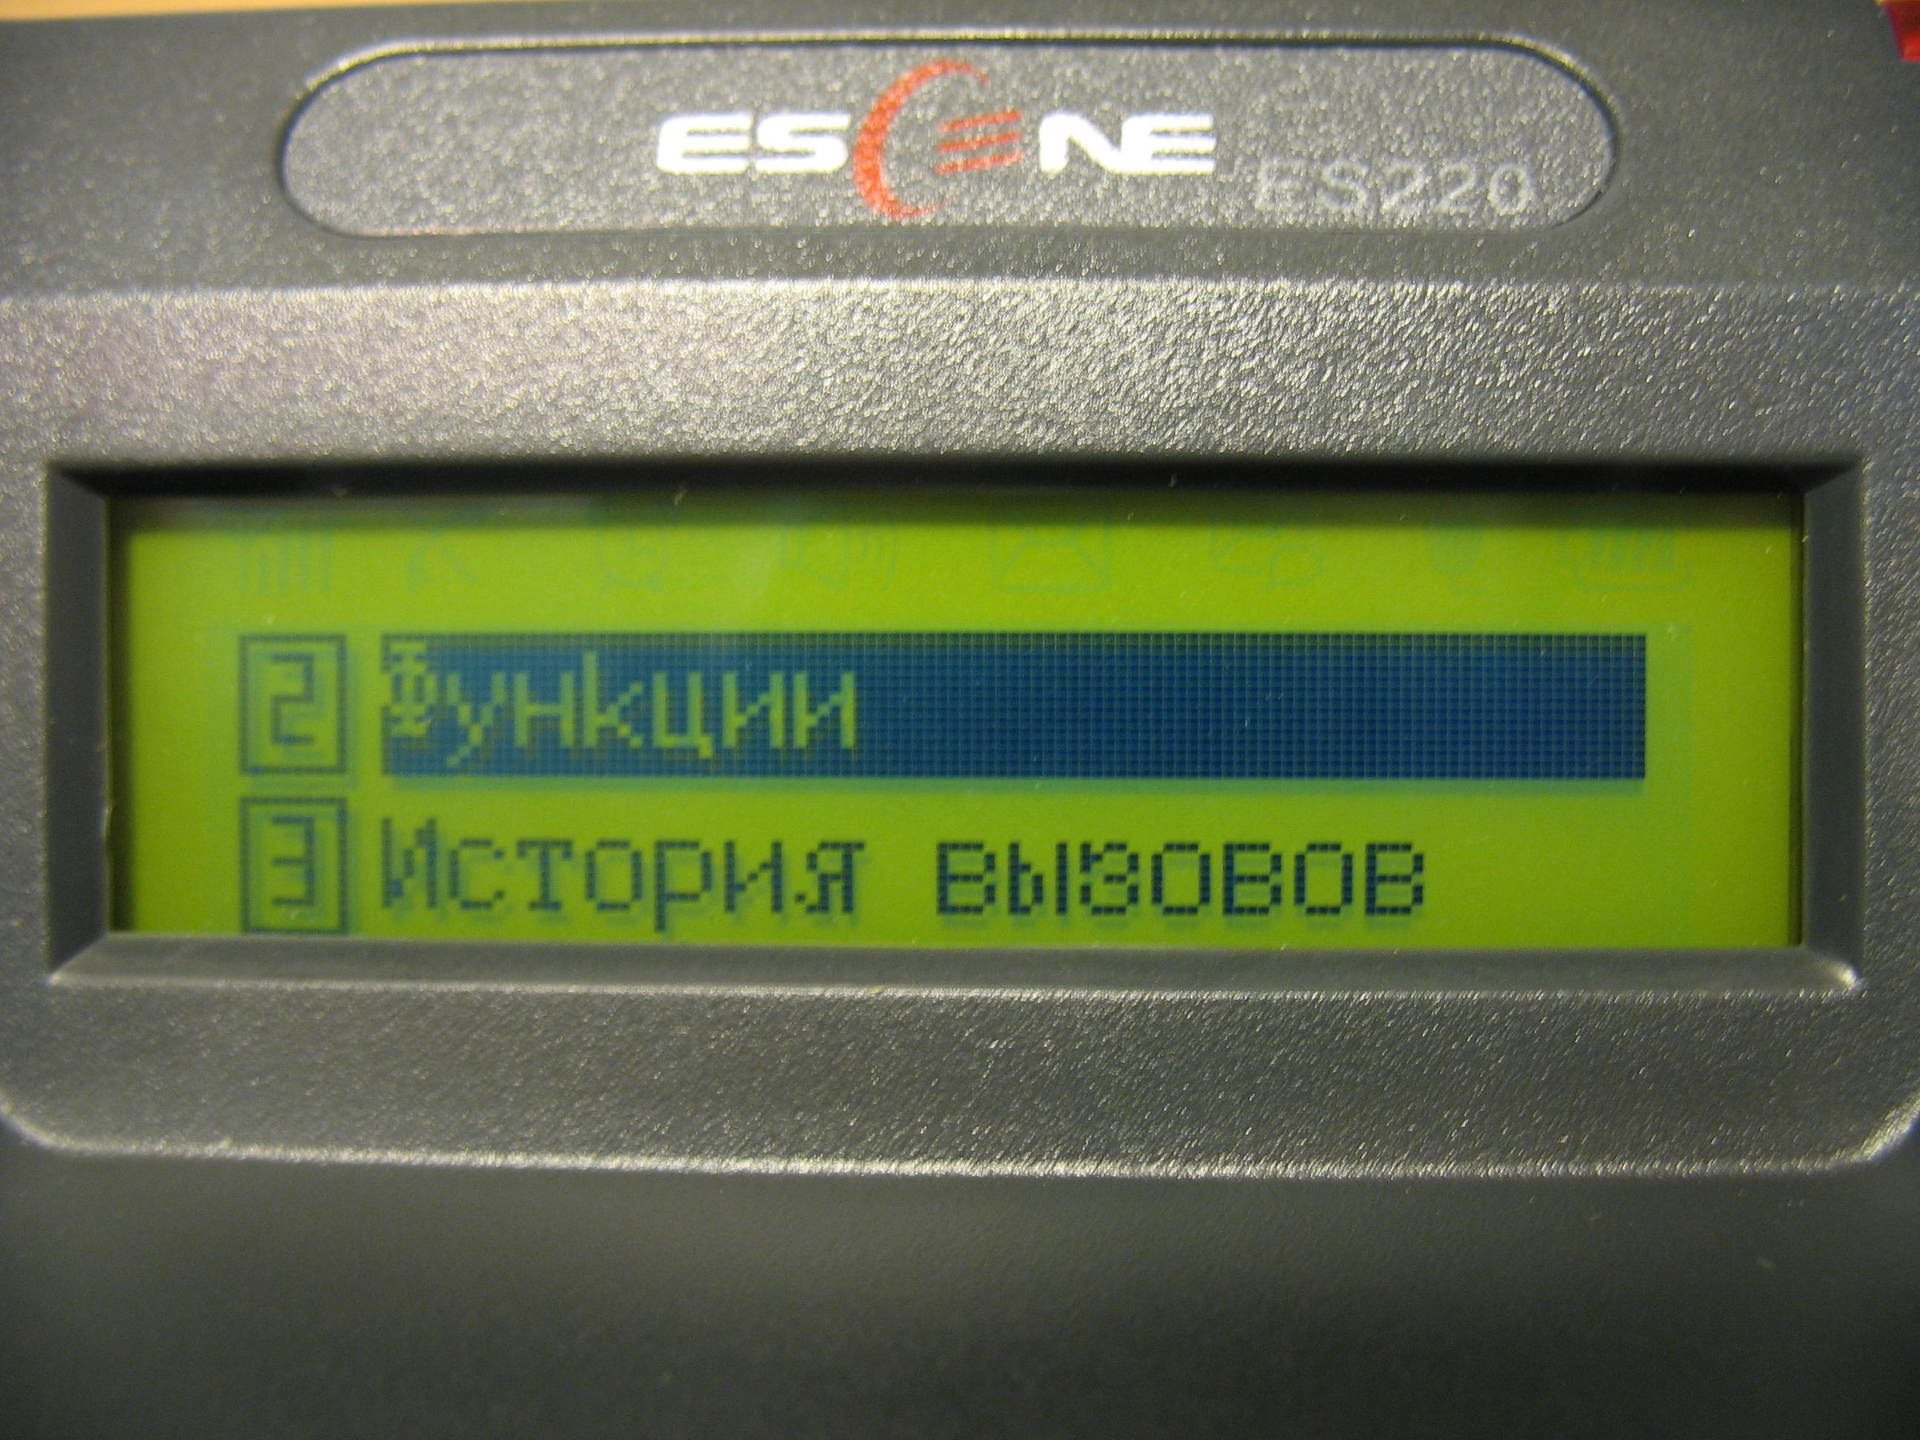 Вид меню на экране телефона Escene ES220